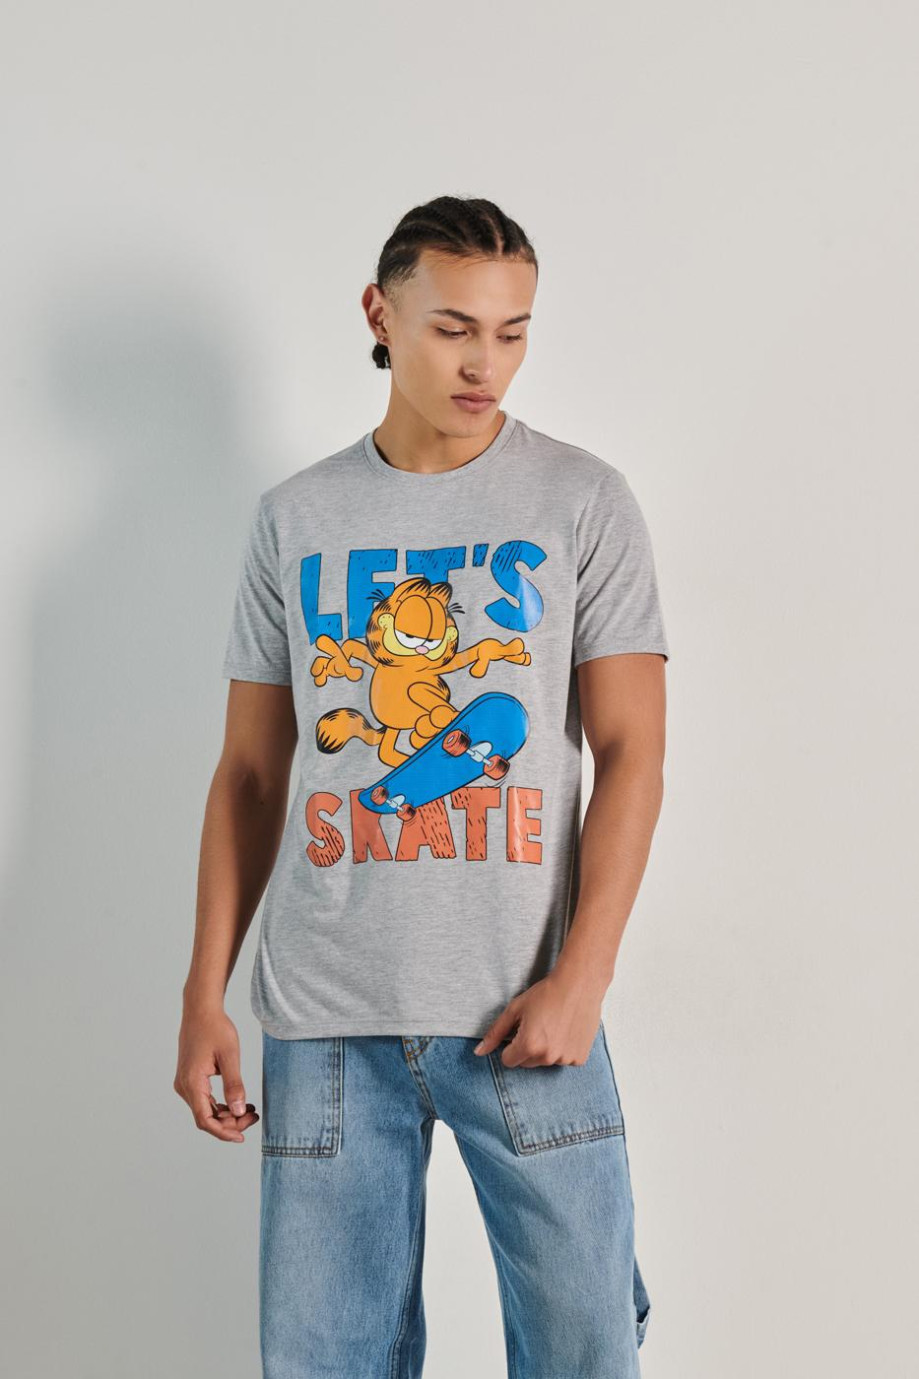 Camiseta unicolor con manga corta y diseño de Garfield